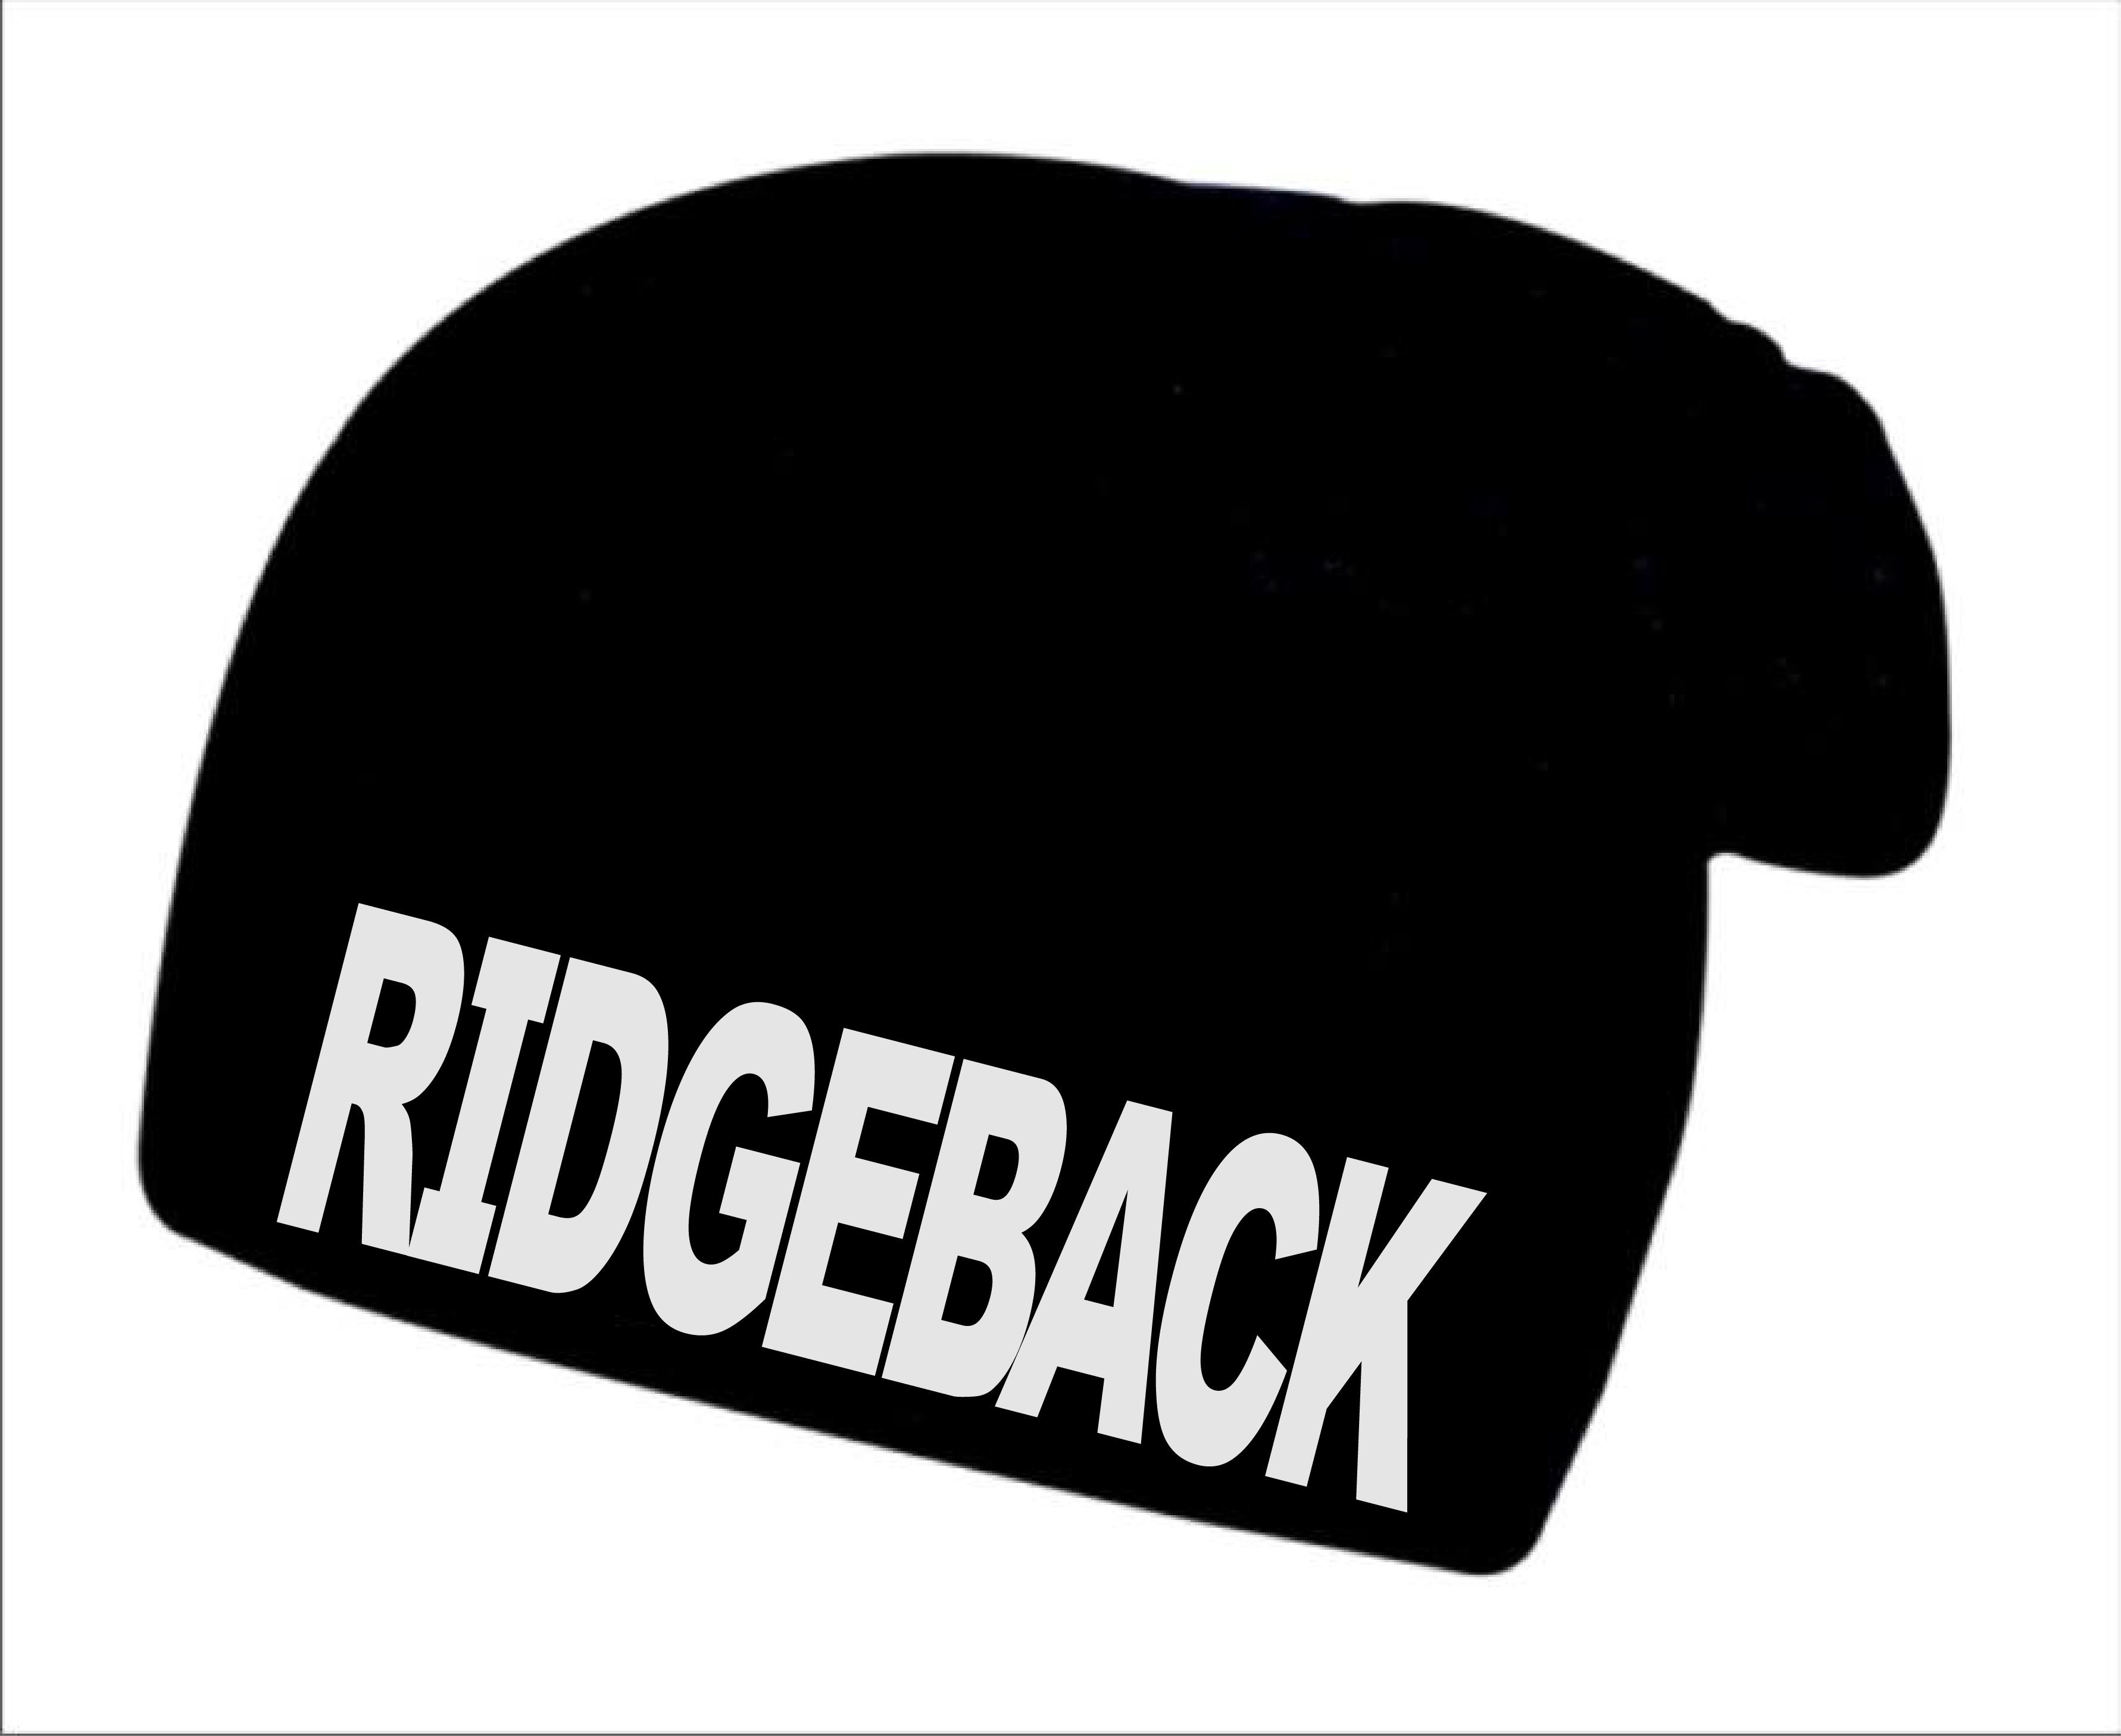 Zimní čepice s potiskem Ridgeback 1